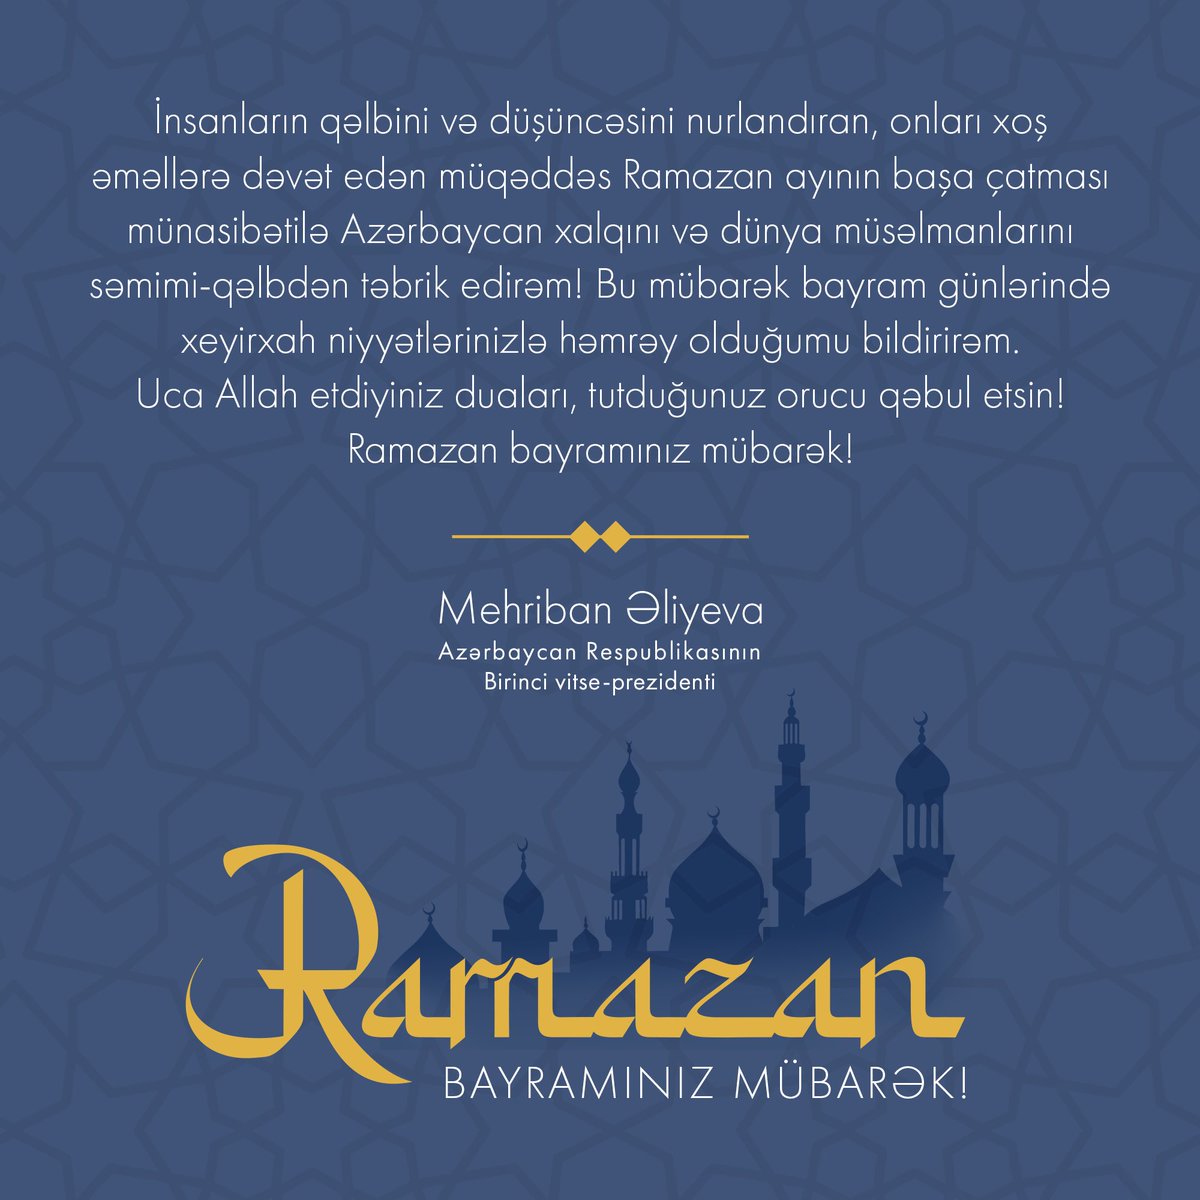 Искренне поздравляю азербайджанский народ и мусульман мира с завершением священного месяца Рамазан, просветляющего сердца и мысли людей, призывающего их к благим поступкам! В эти благословенные праздничные дни выражаю солидарность со всеми вашими добрыми намерениями. Да услышит…